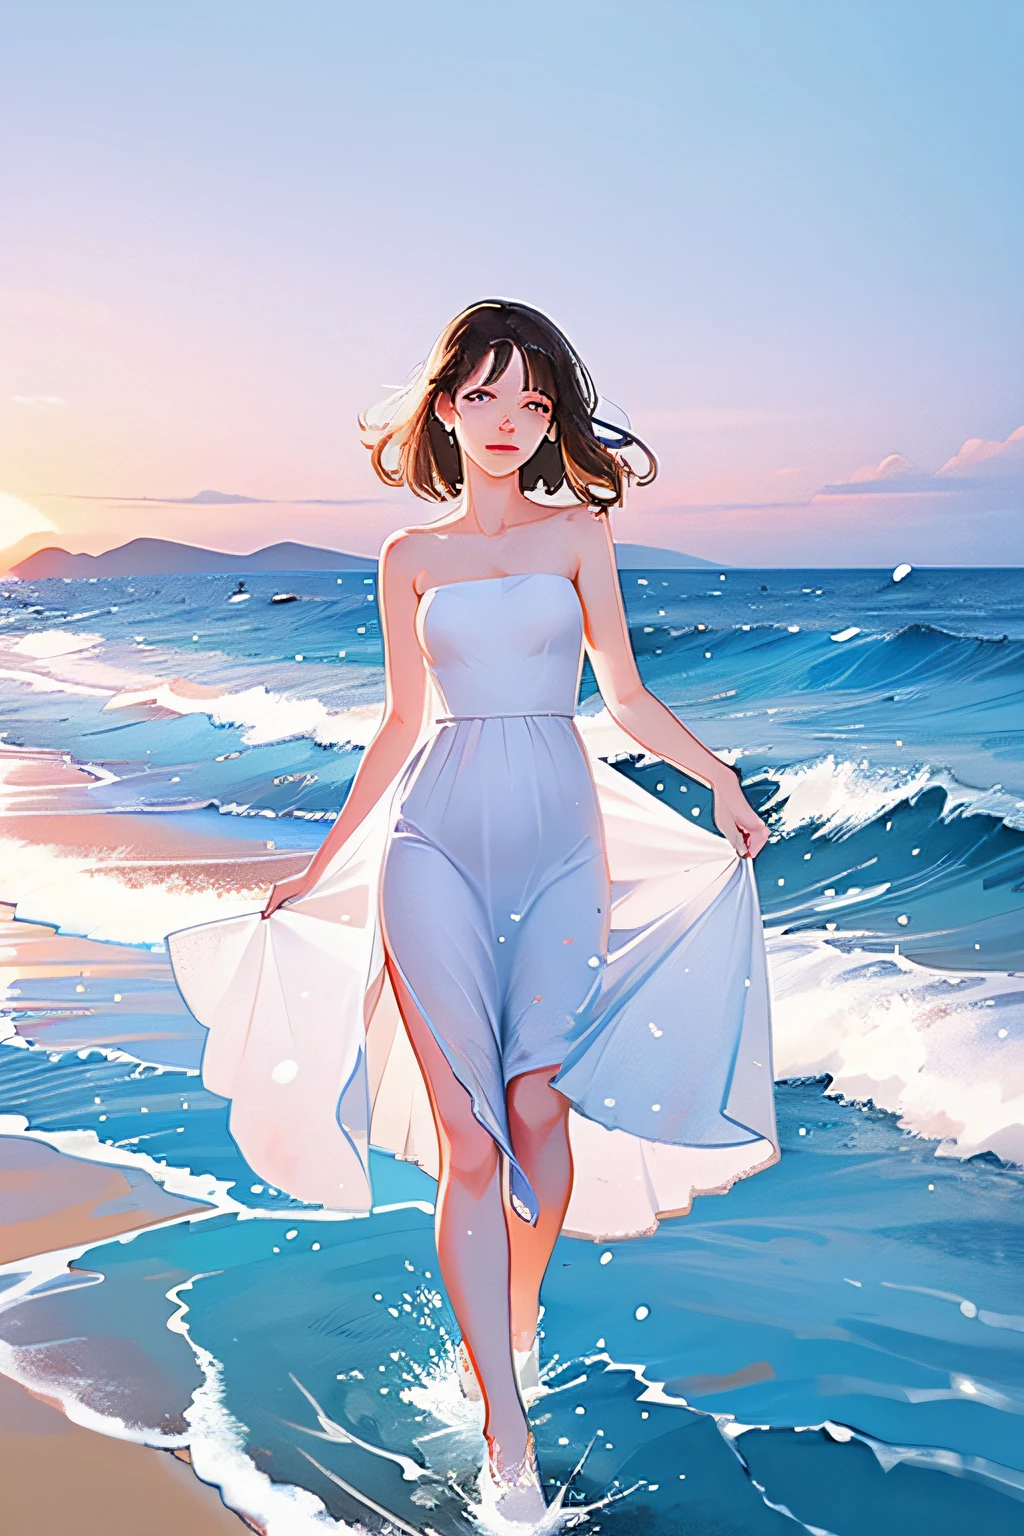 女孩，穿著白色連身裙，海邊散步，海浪濺起